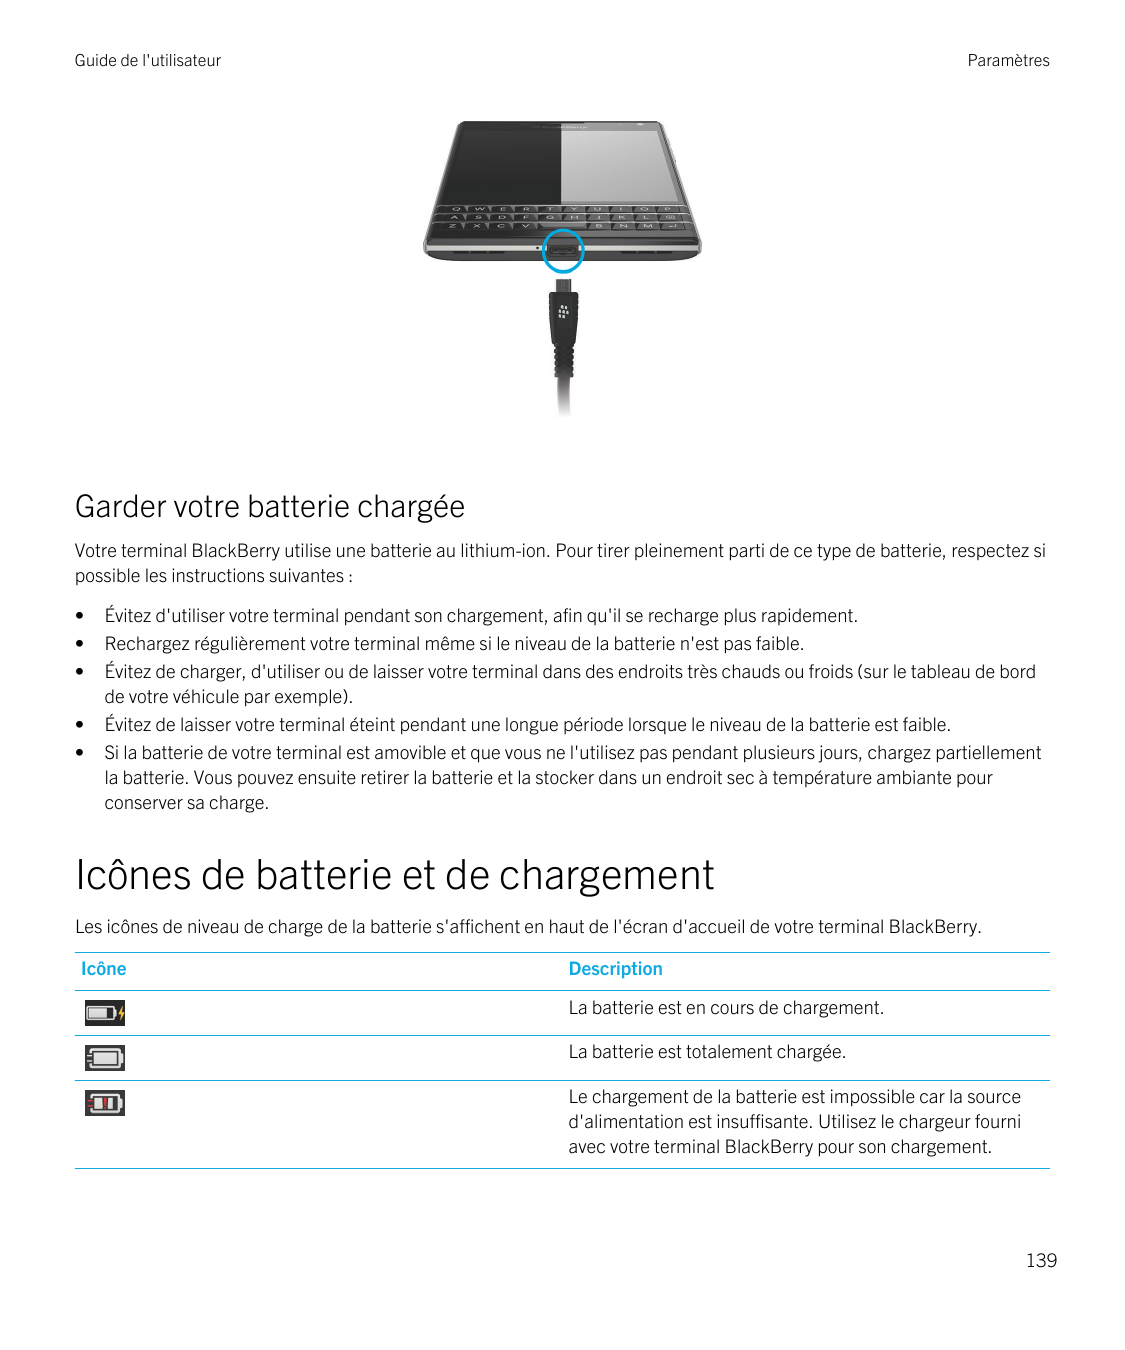 Guide de l'utilisateurParamètresGarder votre batterie chargéeVotre terminal BlackBerry utilise une batterie au lithium-ion. Pour